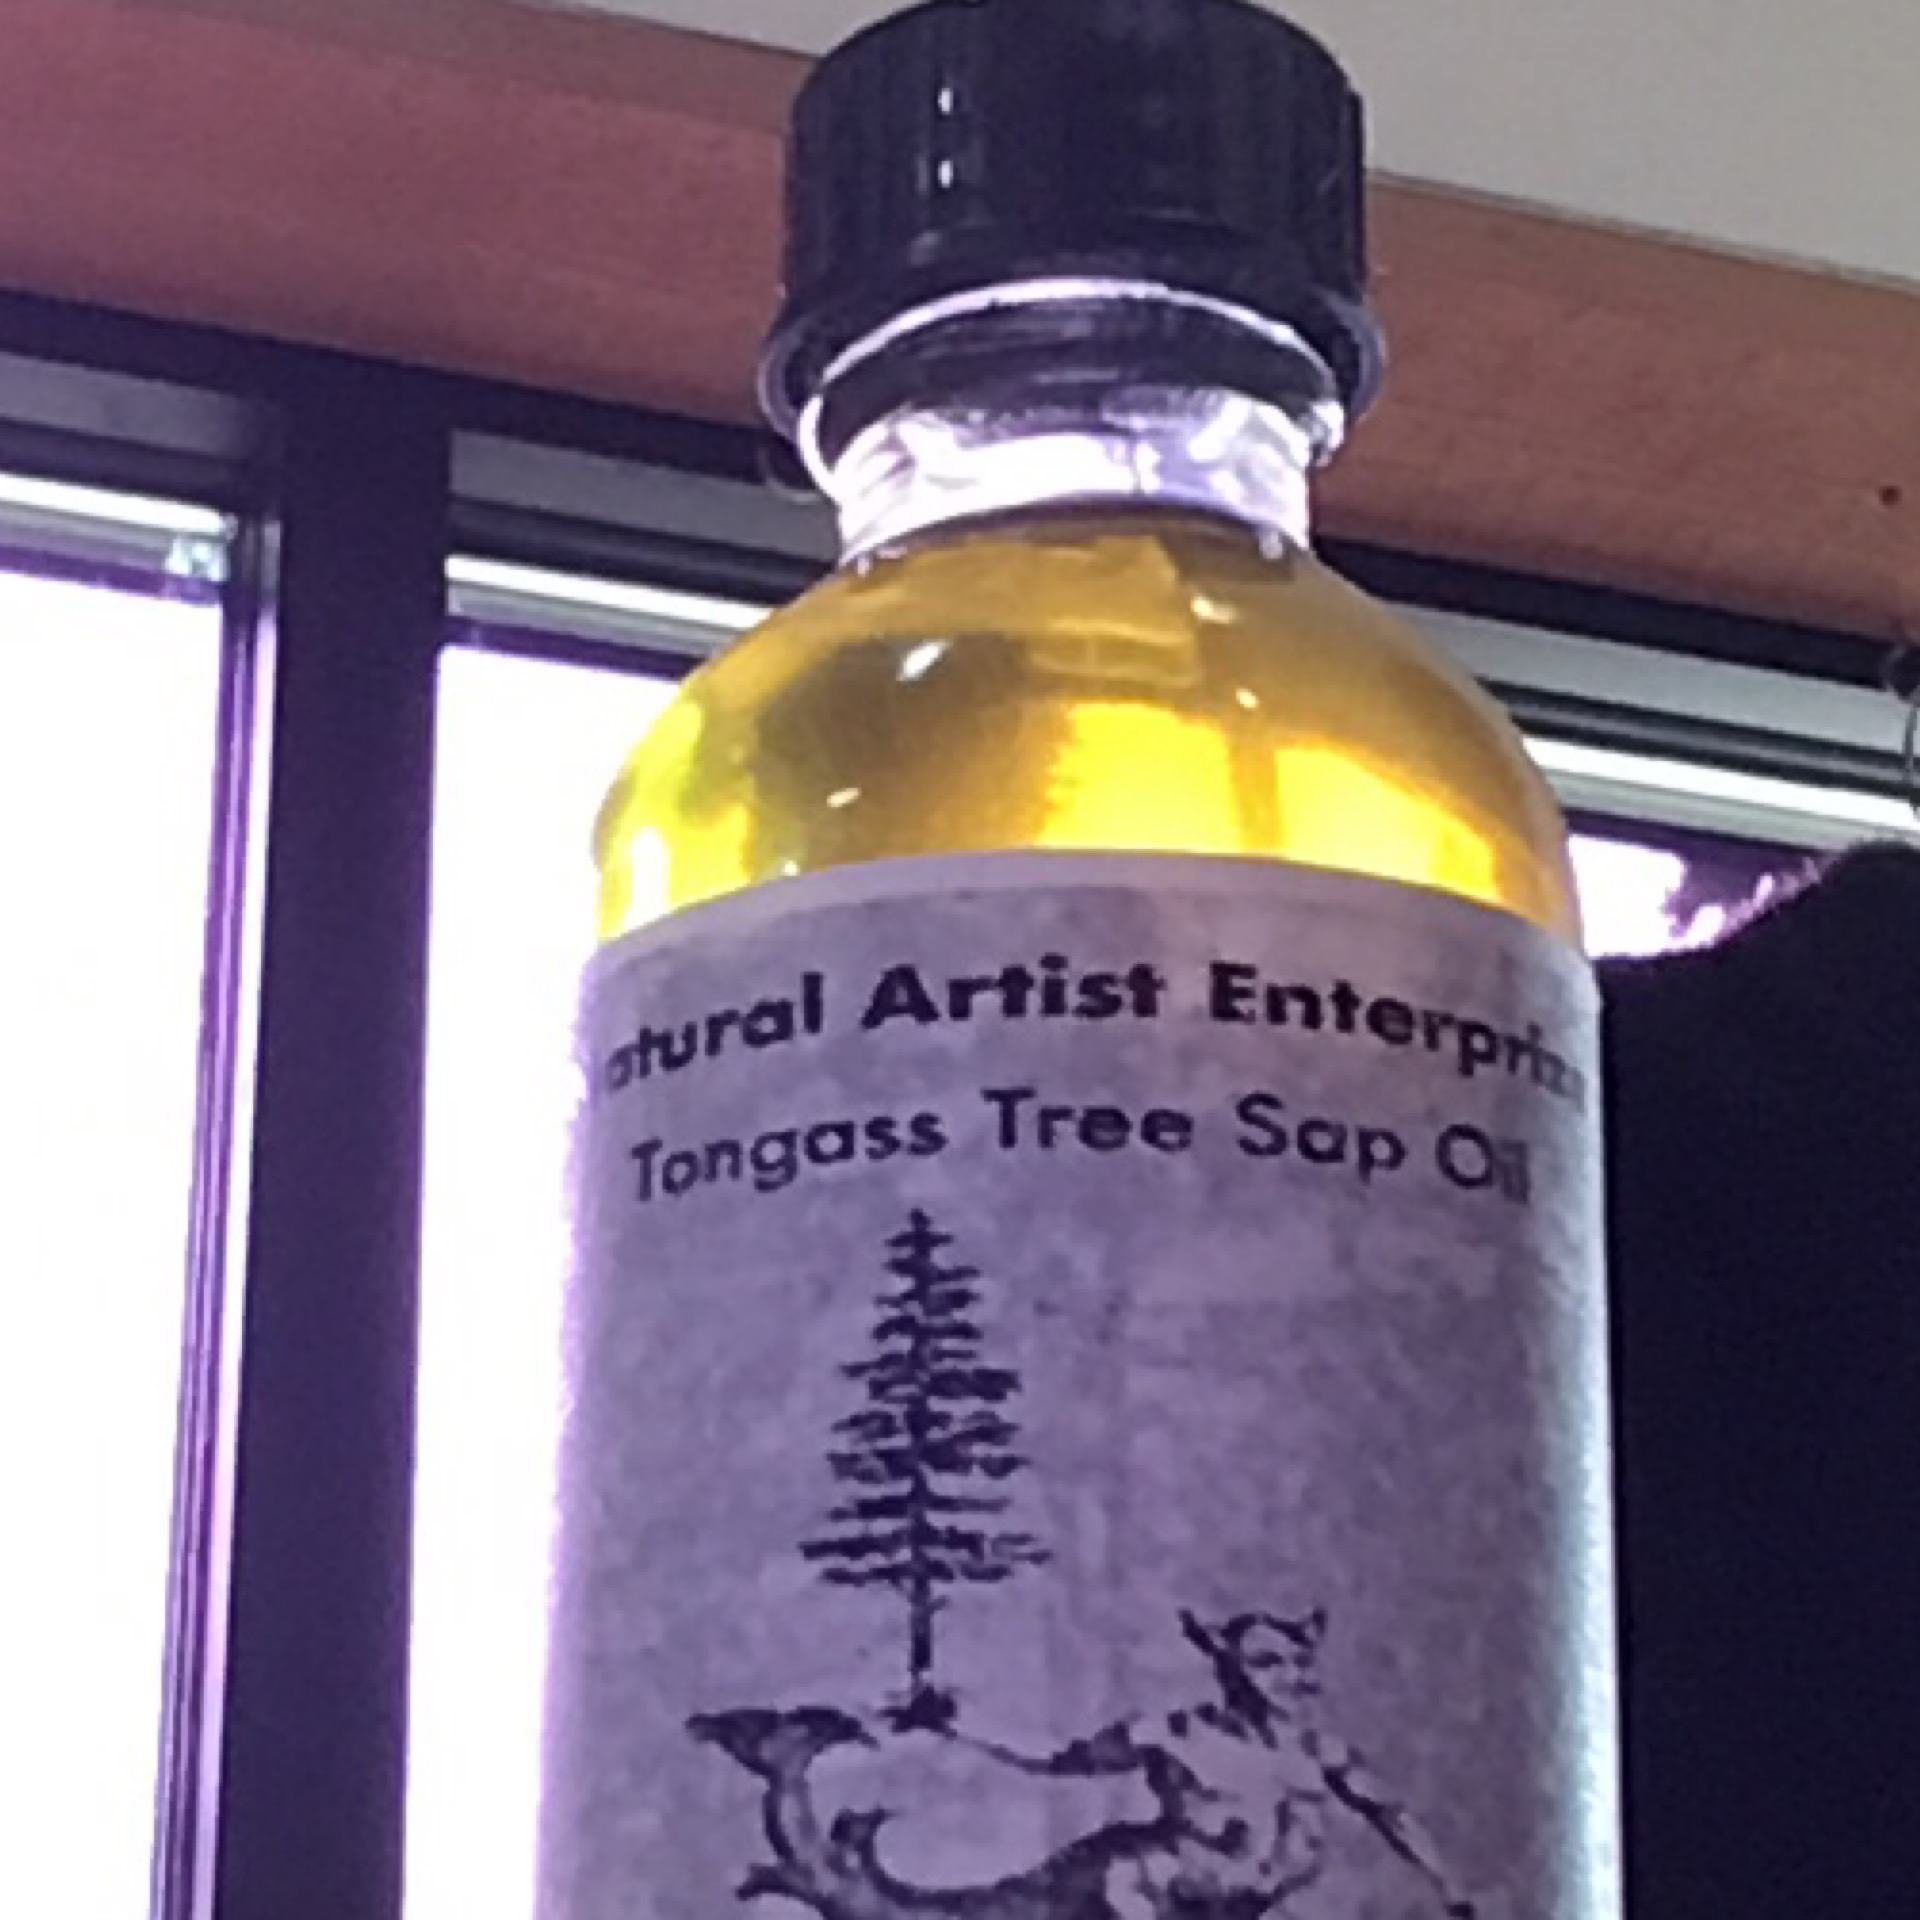 Tree Sap Oil